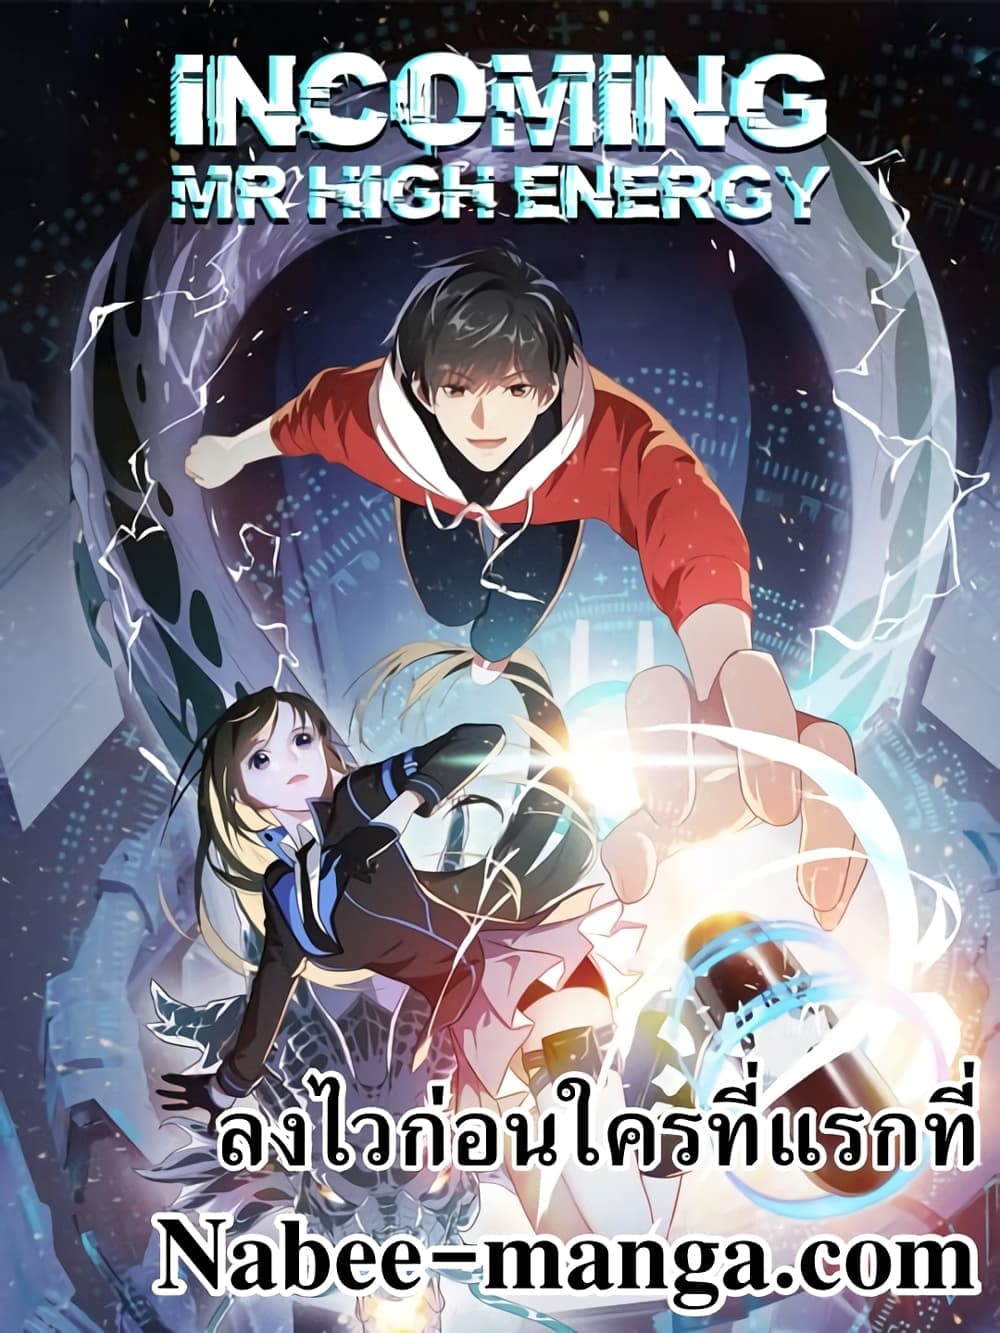 High Energy Strikes 221-221